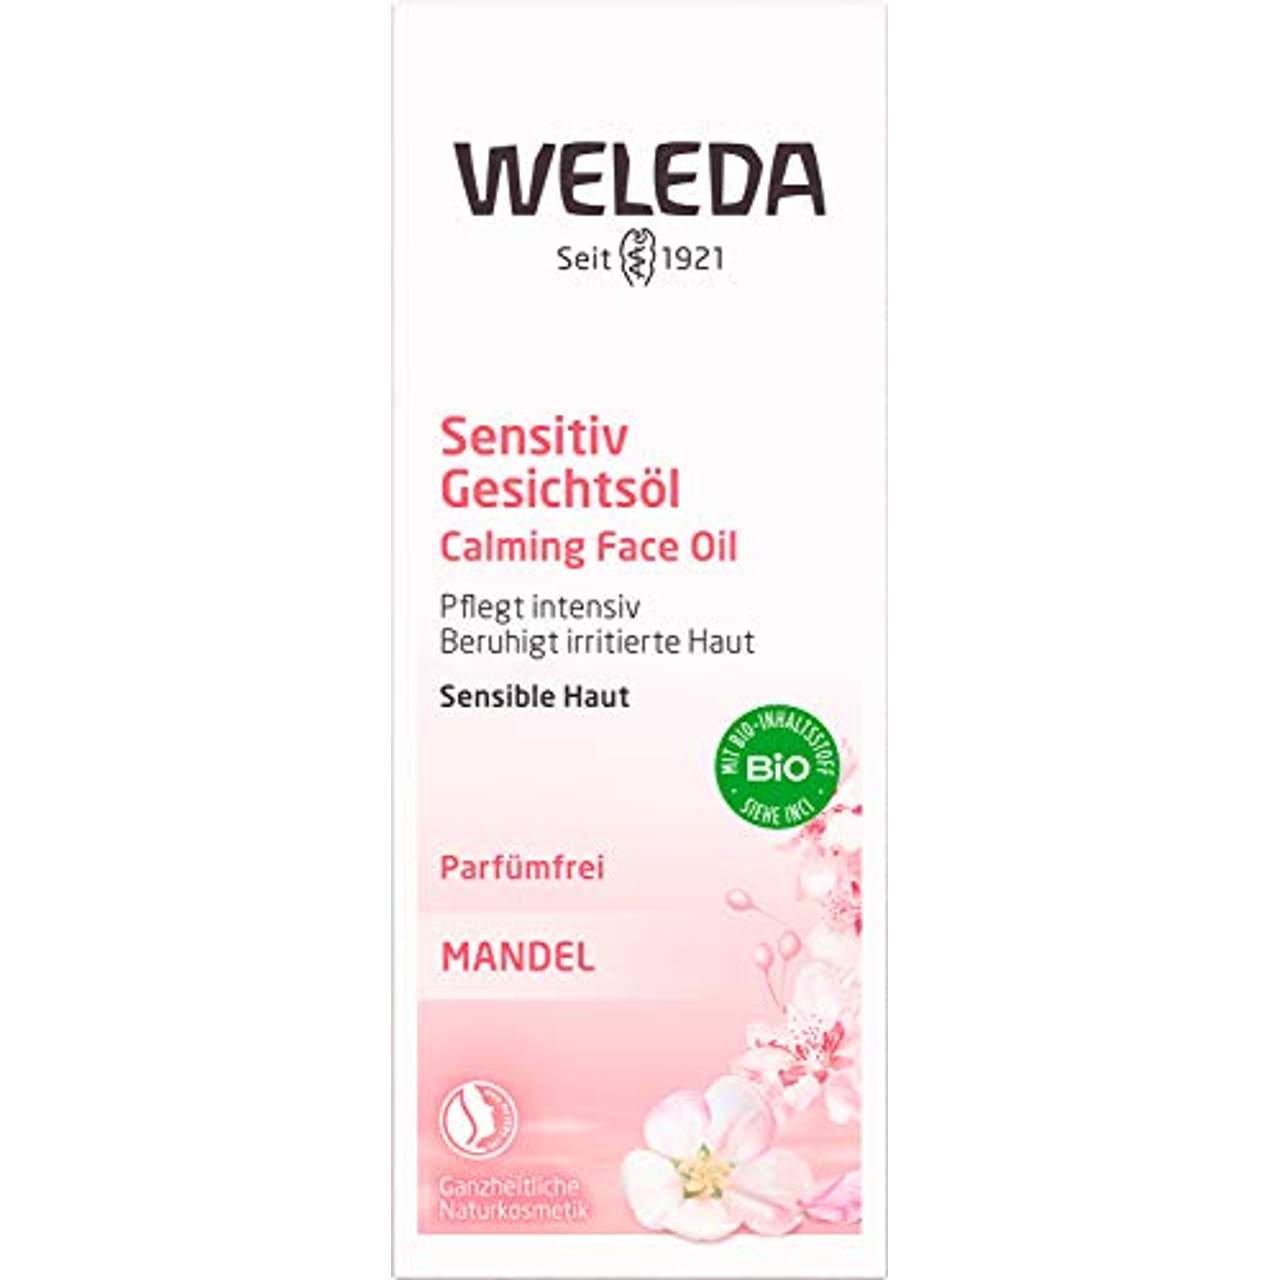 WELEDA Bio Mandel Sensitiv Gesichtsöl